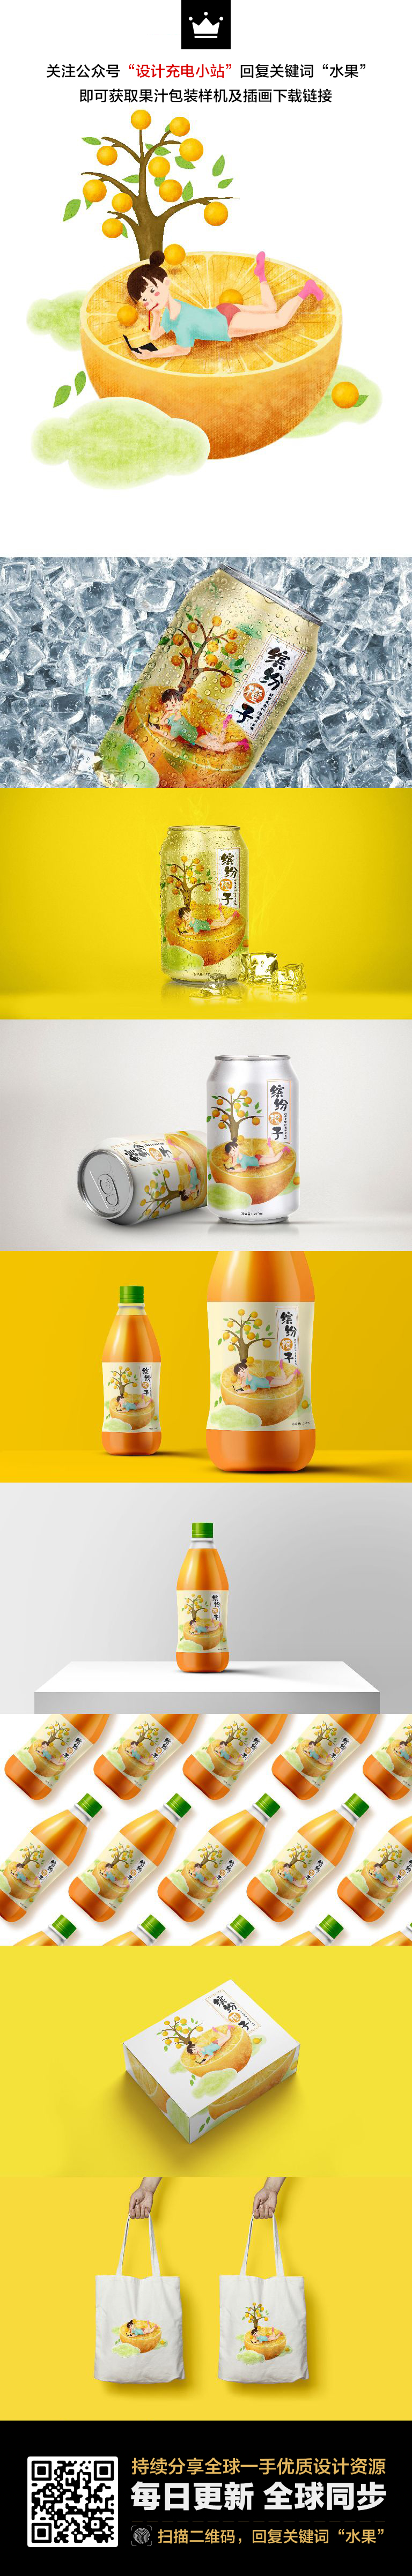 饮料品牌VI包装样机和水果手绘插画矢量素材